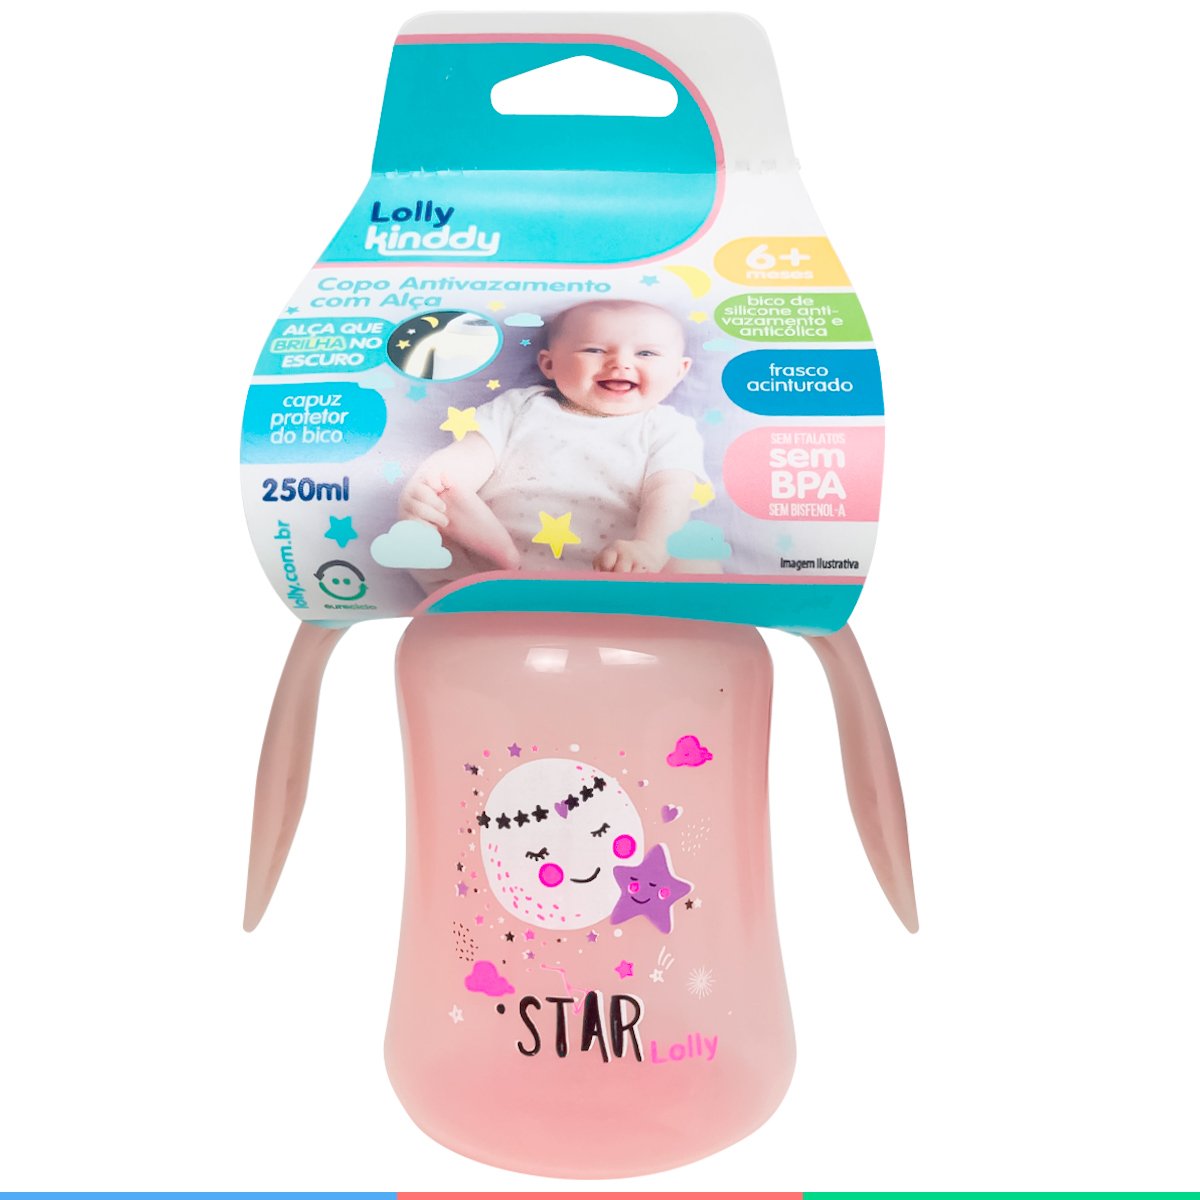 Copo Infantil Antivazamento Com Alça Brilhante Para Bebê 6m+ Bico de Silicone 250ml Rosa Lolly - 5